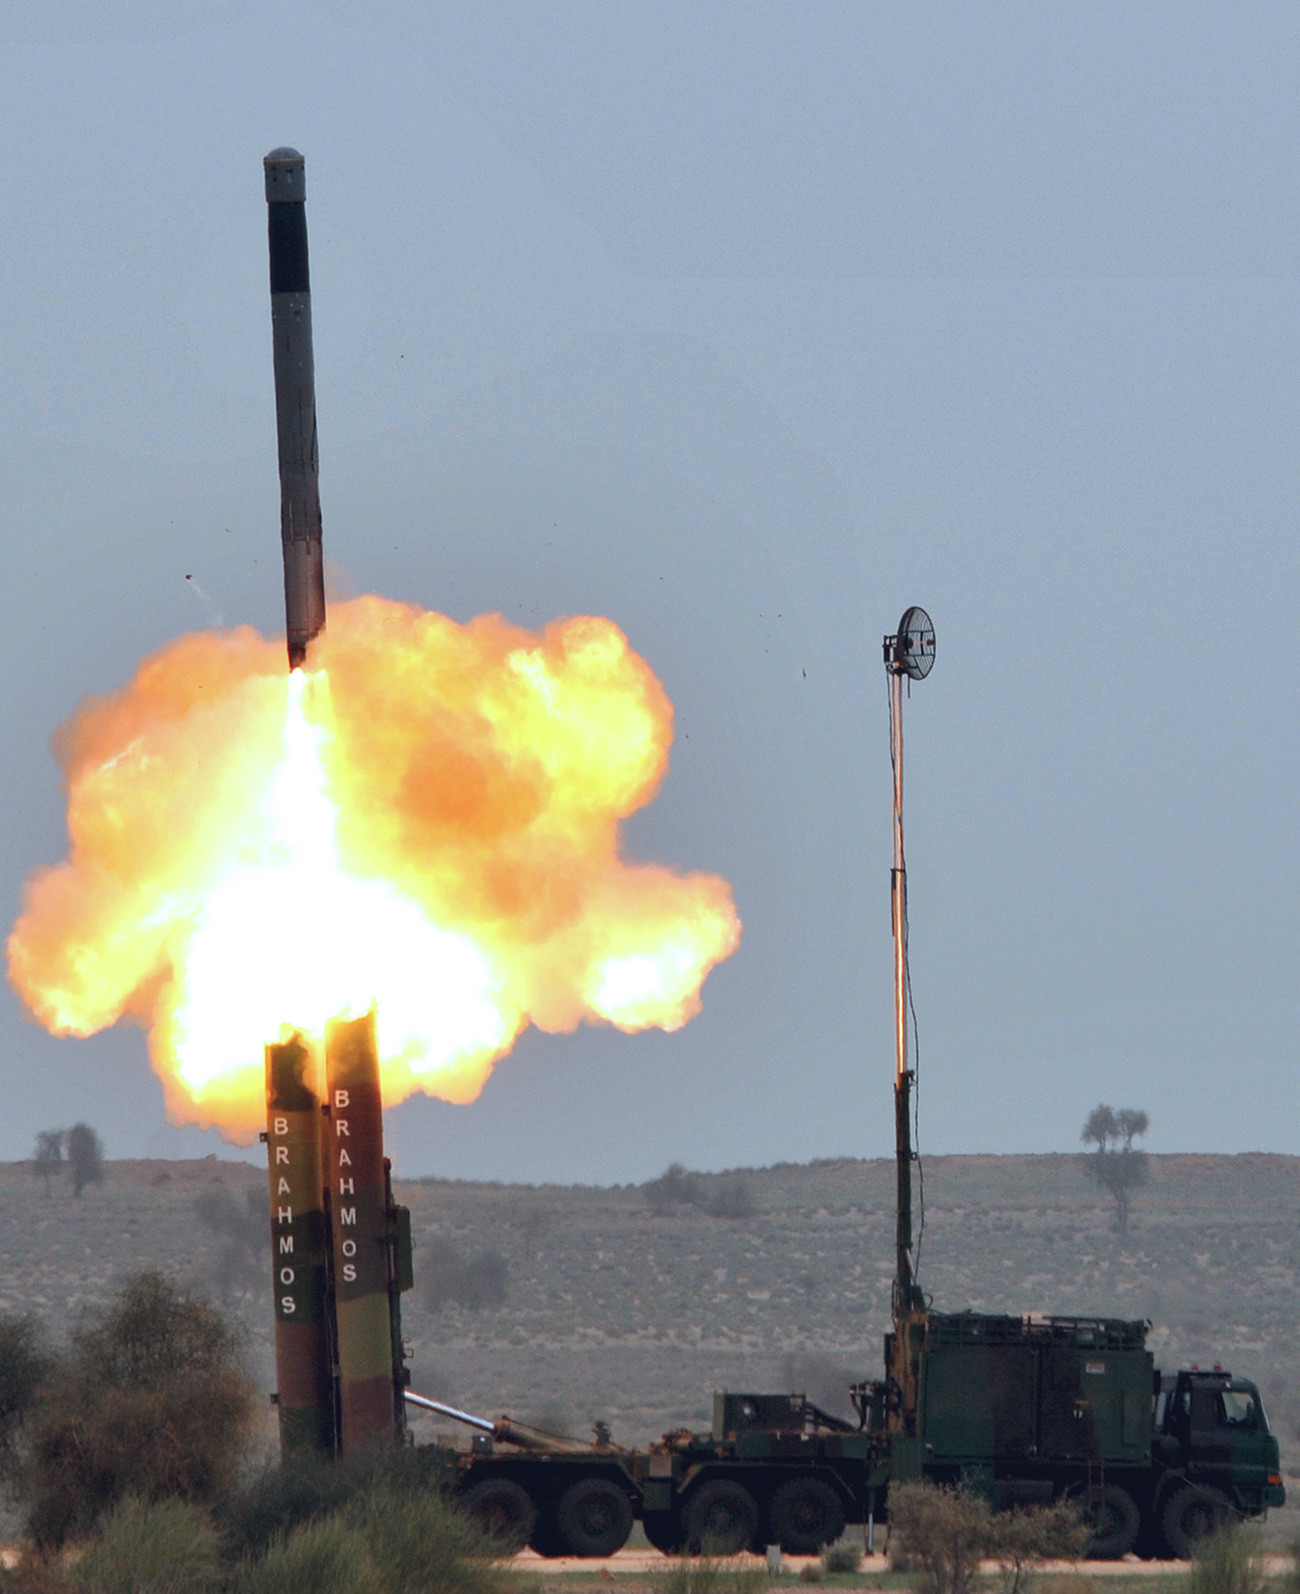 Тази снимка е публикувана от Идийското медийно информационно бюро на 4 март 2012 година. Индийската армия демонстрира изстрелване на ракета 